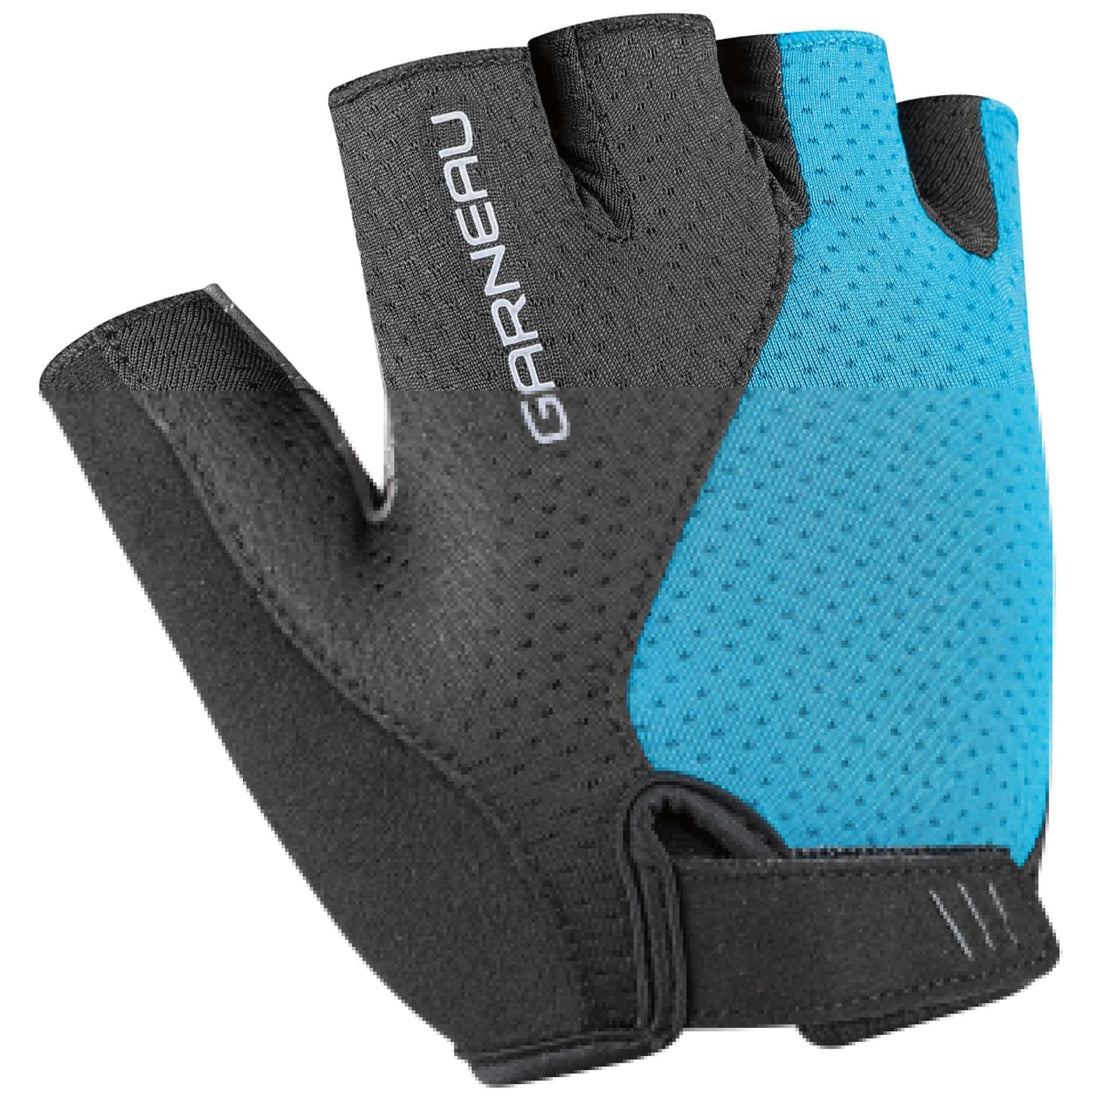 Air gel ultra cycling gloves Women